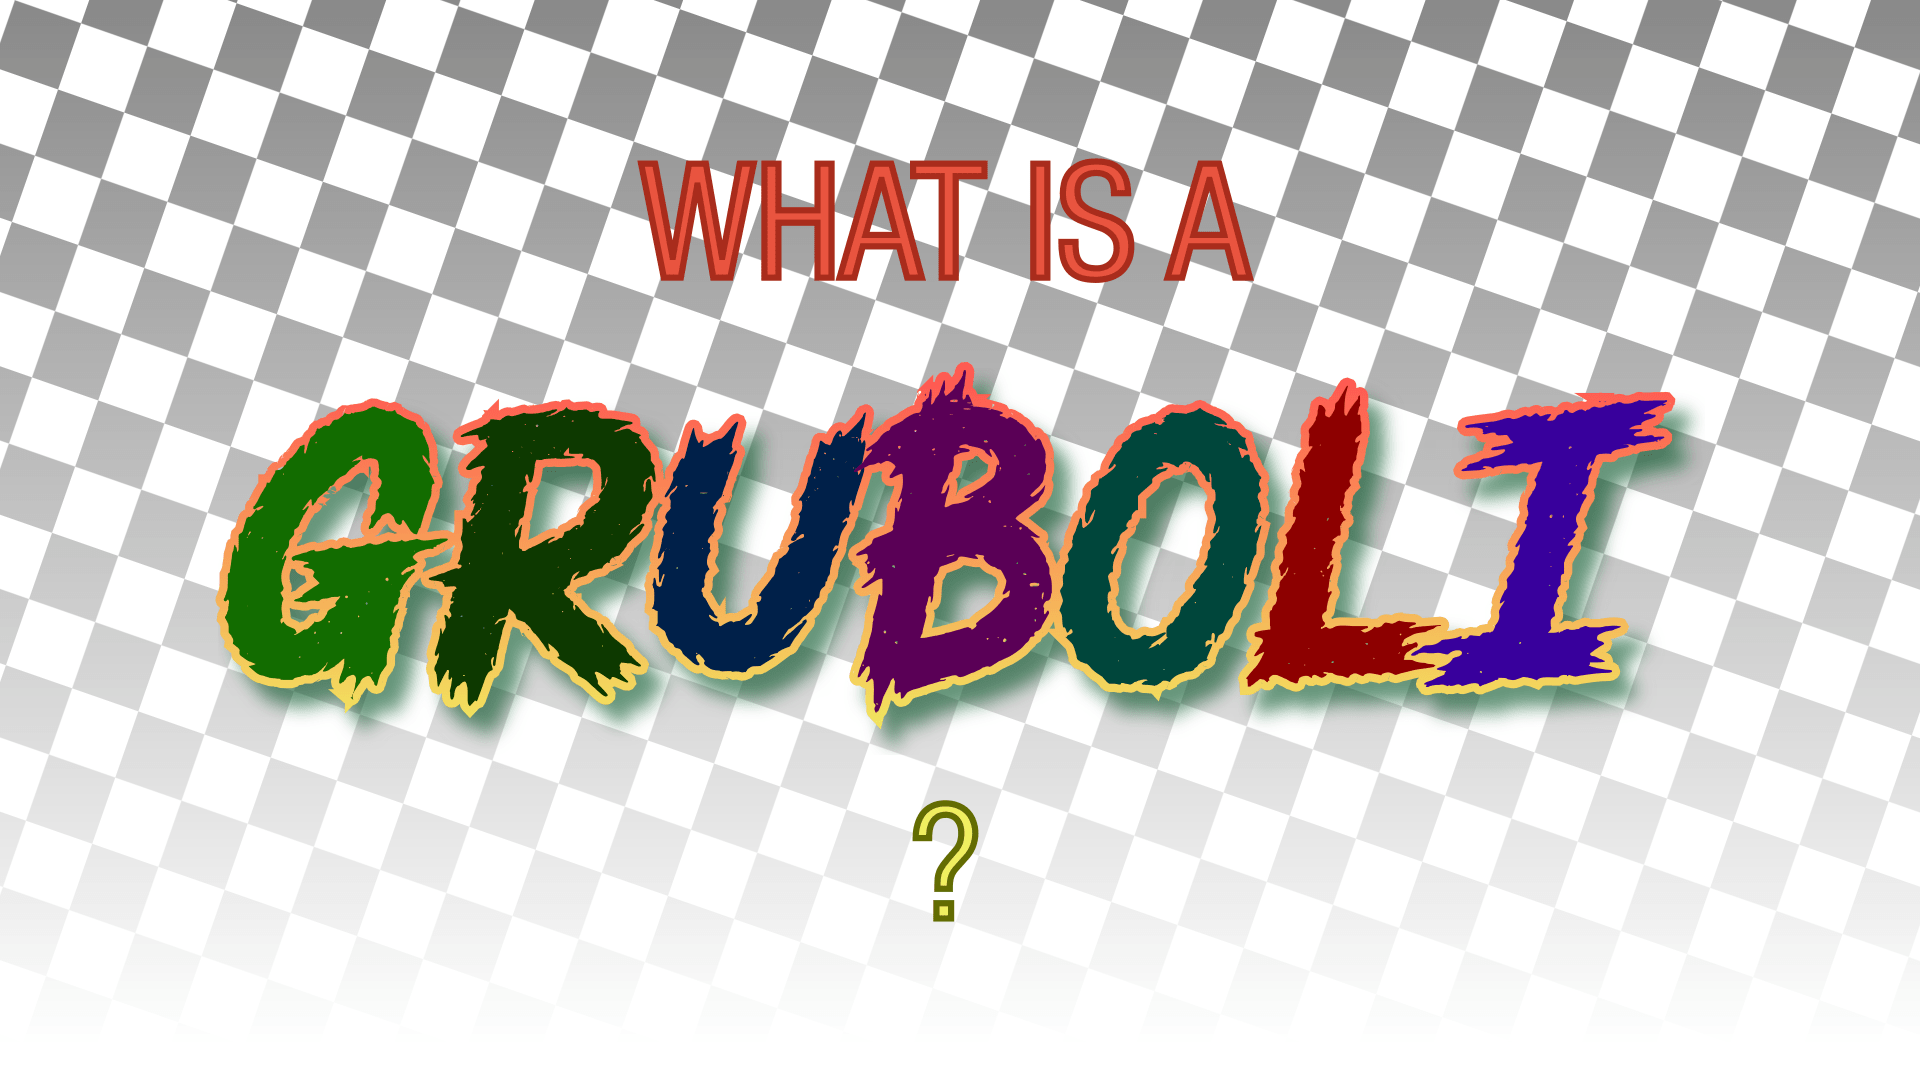 The Gruboli™ Question